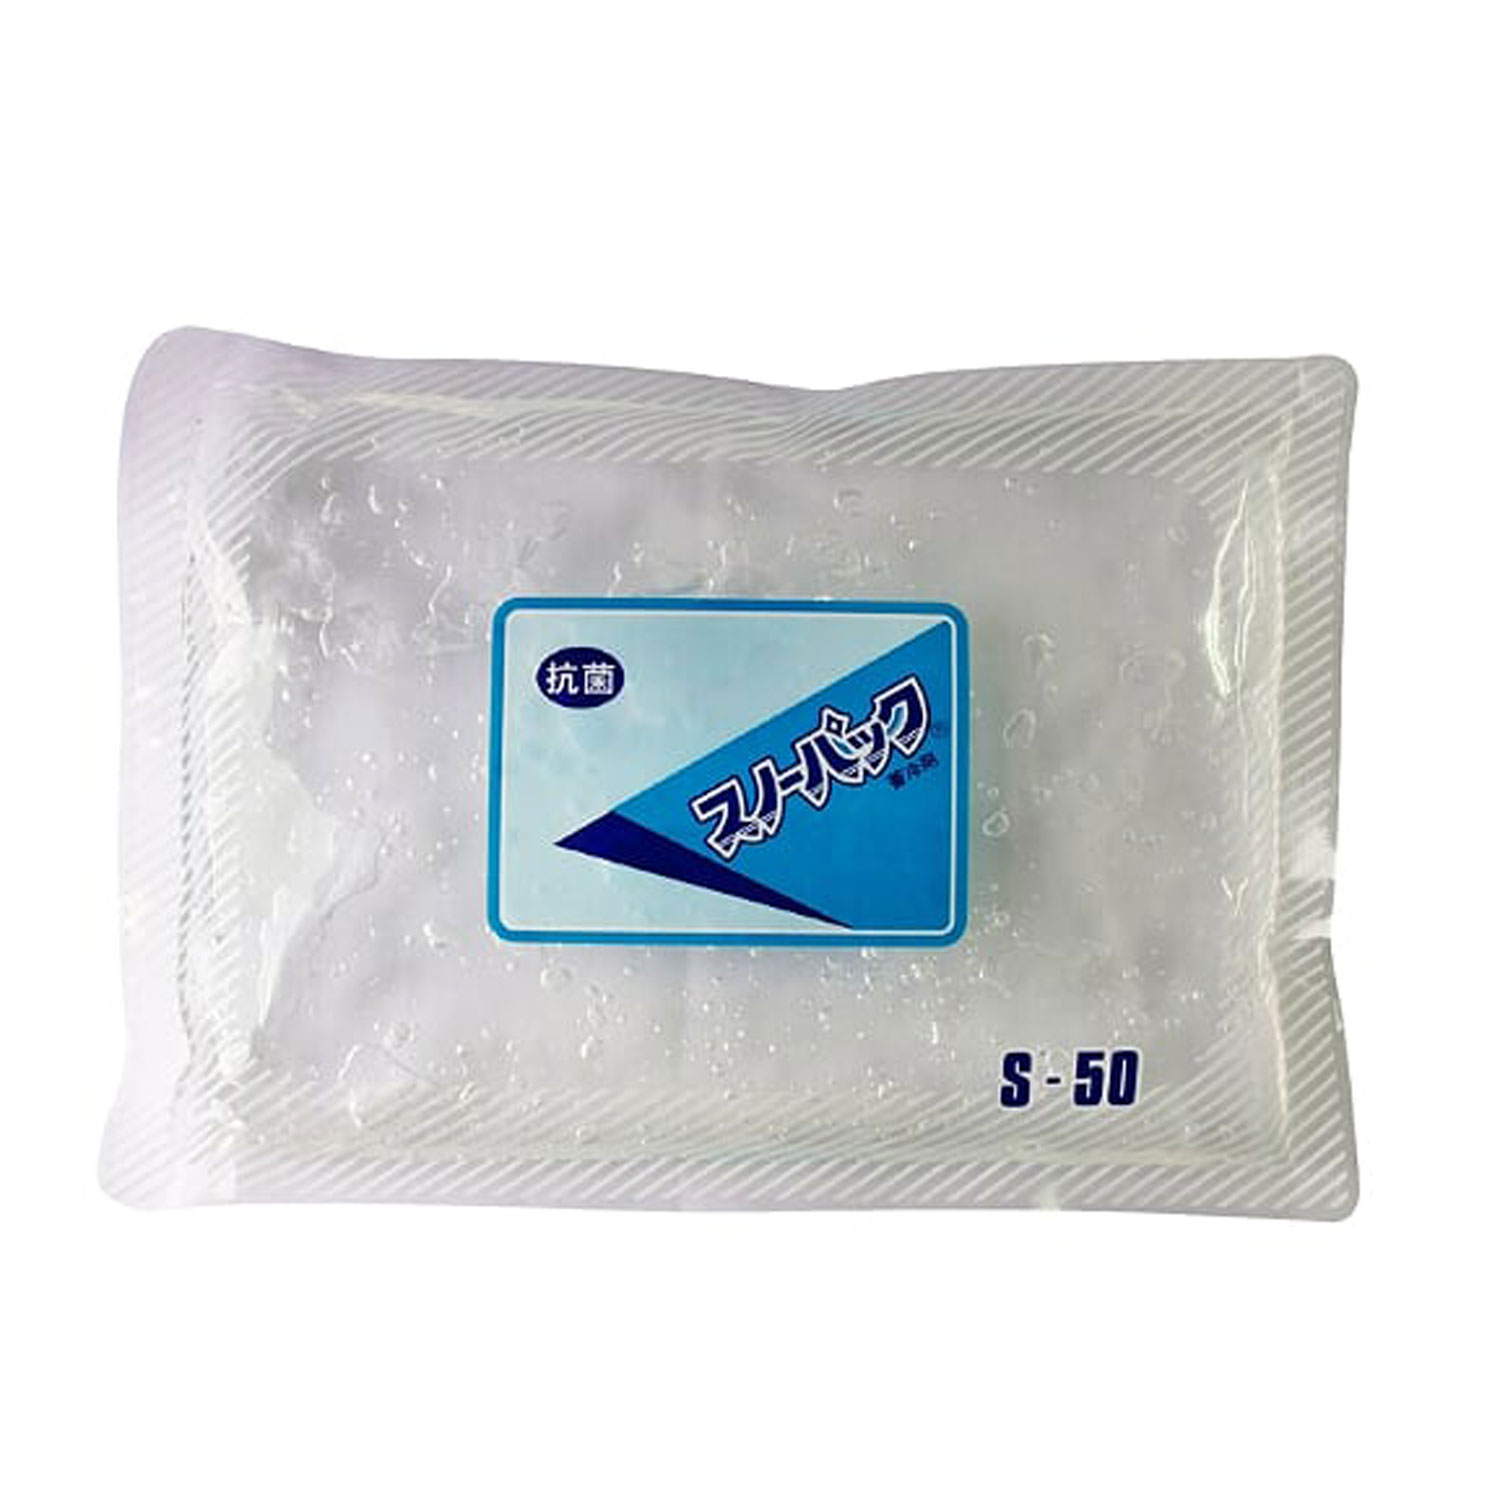 【30個】スノーパック S-50(抗菌) 三重化学工業 00252941 プロステ